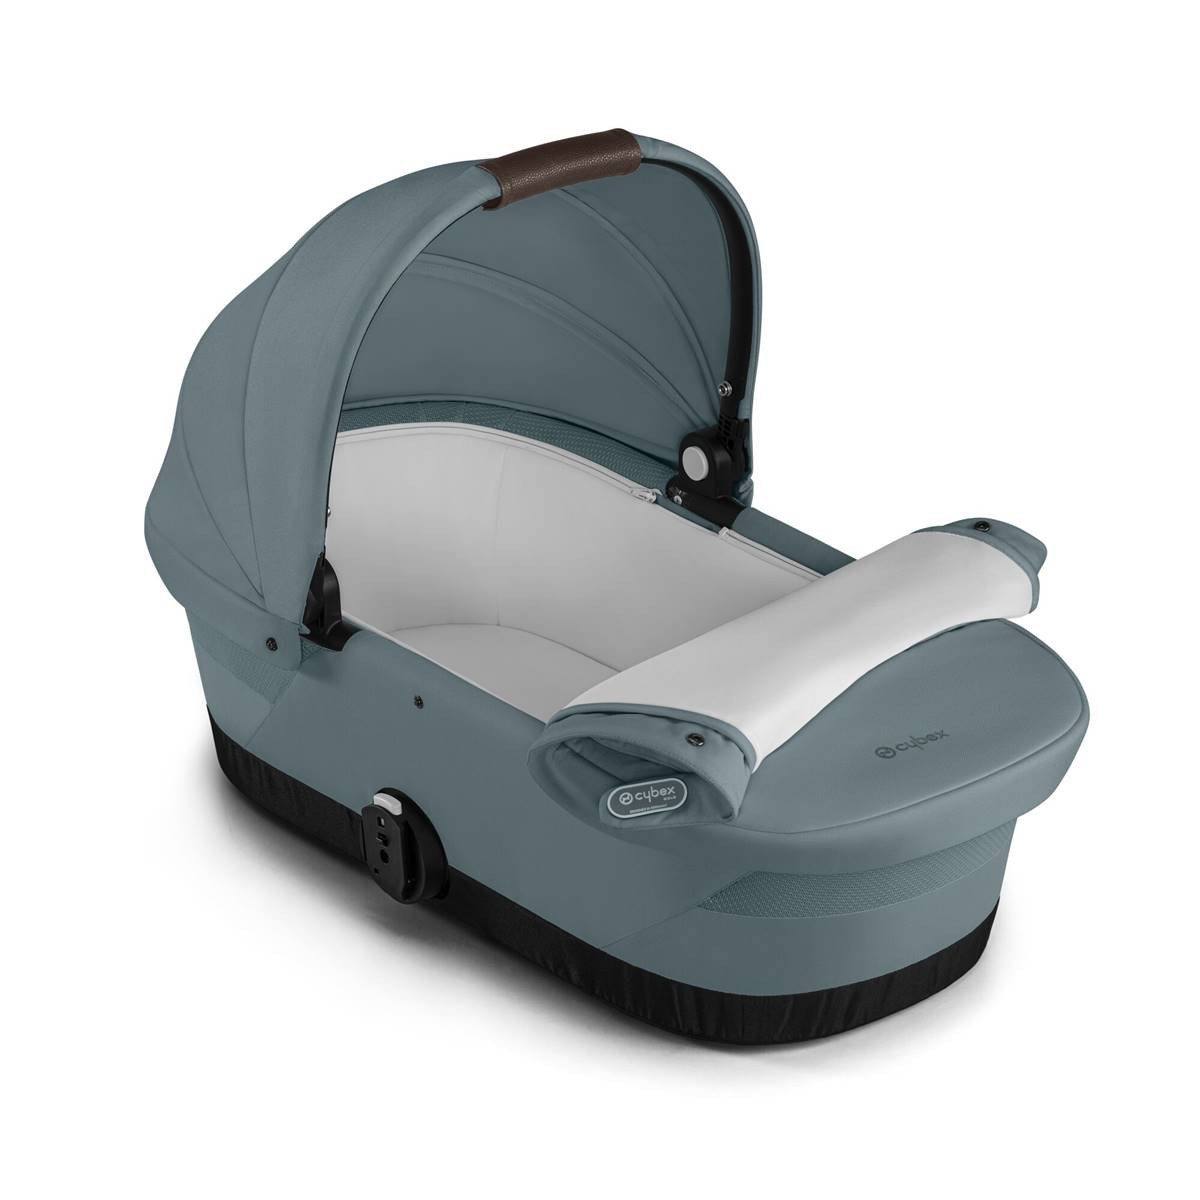 Intérieur spacieux et douillet et son matelas à mémoire de forme pour une ergonomie parfaite de bébé dans la nacelle Cot 2 pour Gazelle S